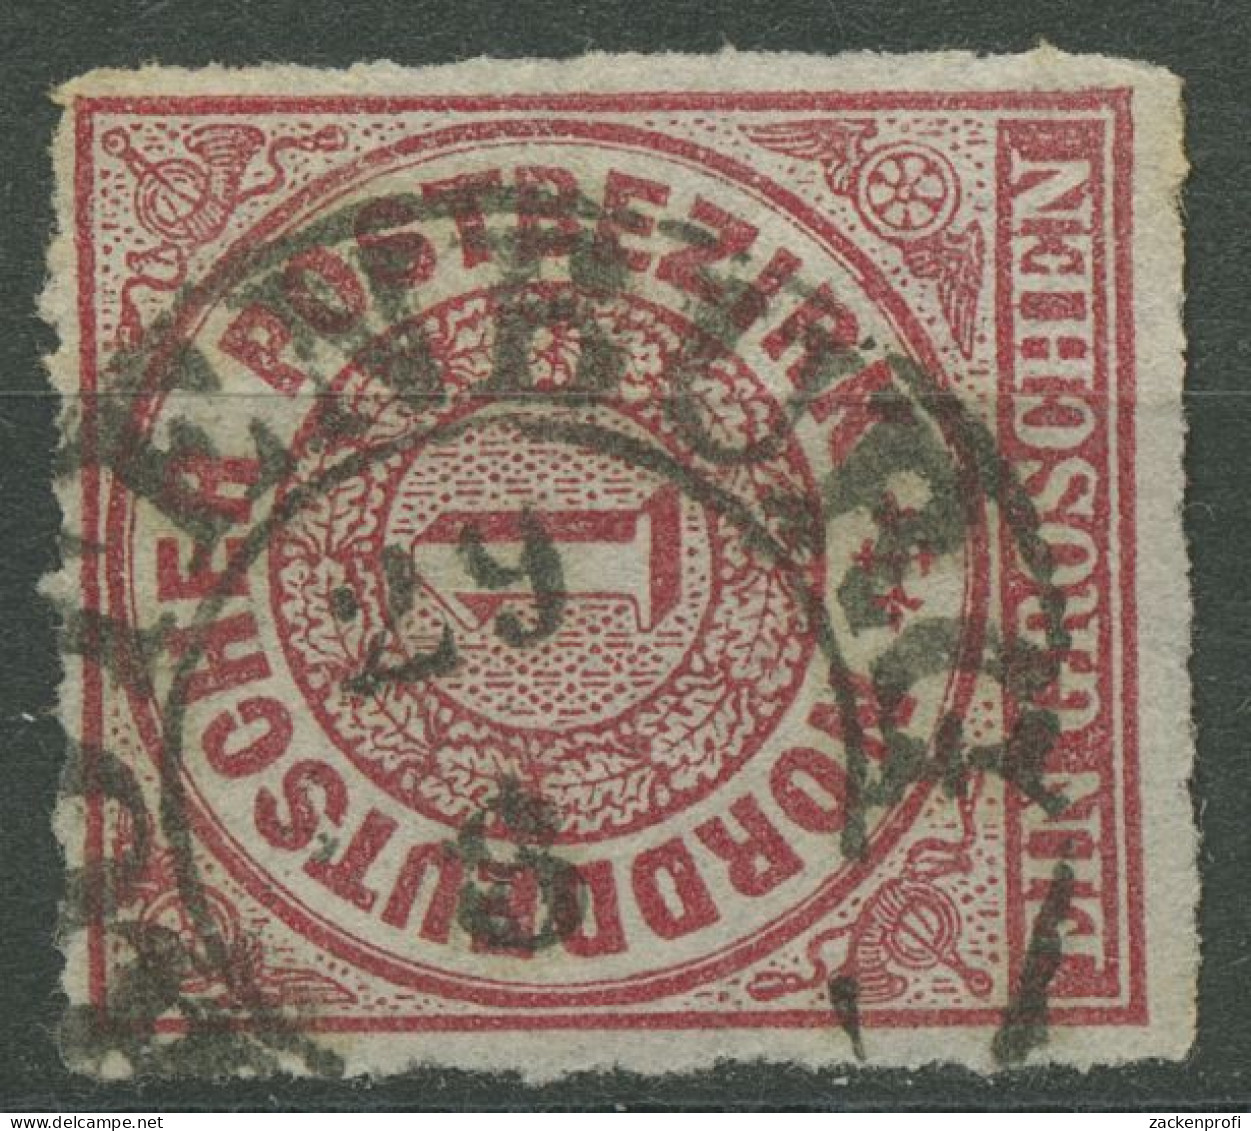 Norddeutscher Postbezirk NDP 1868 1 Gr. 4 Mit T&T-K2-Stpl. ROTENBURG - Used